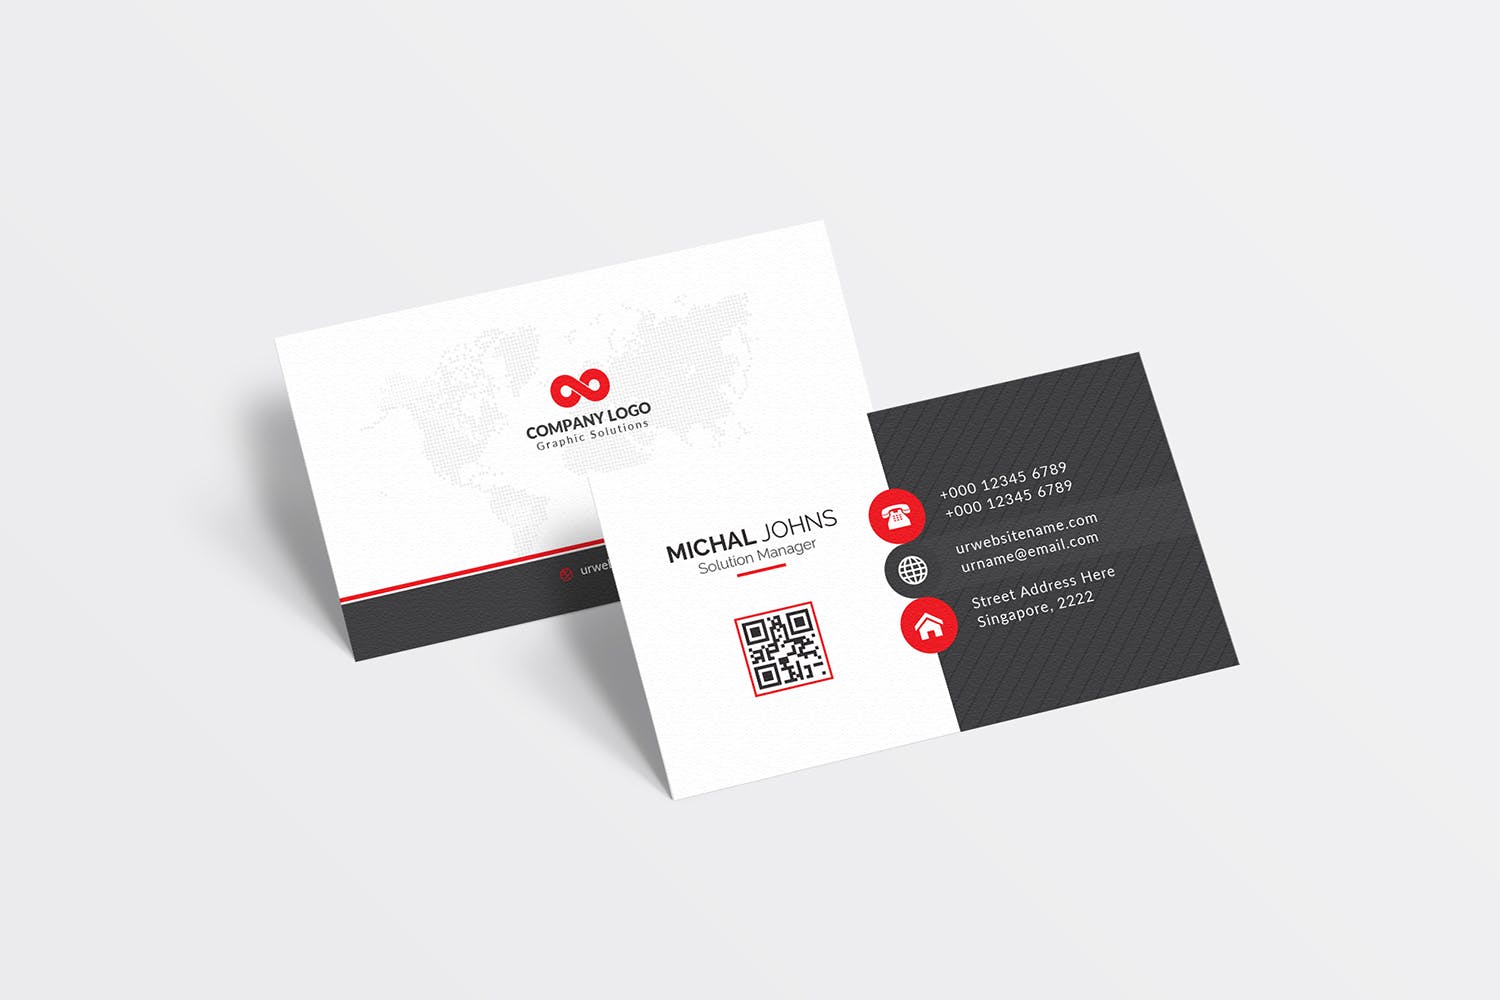 经典排版风格企业蚂蚁素材精选名片模板 Business Card插图